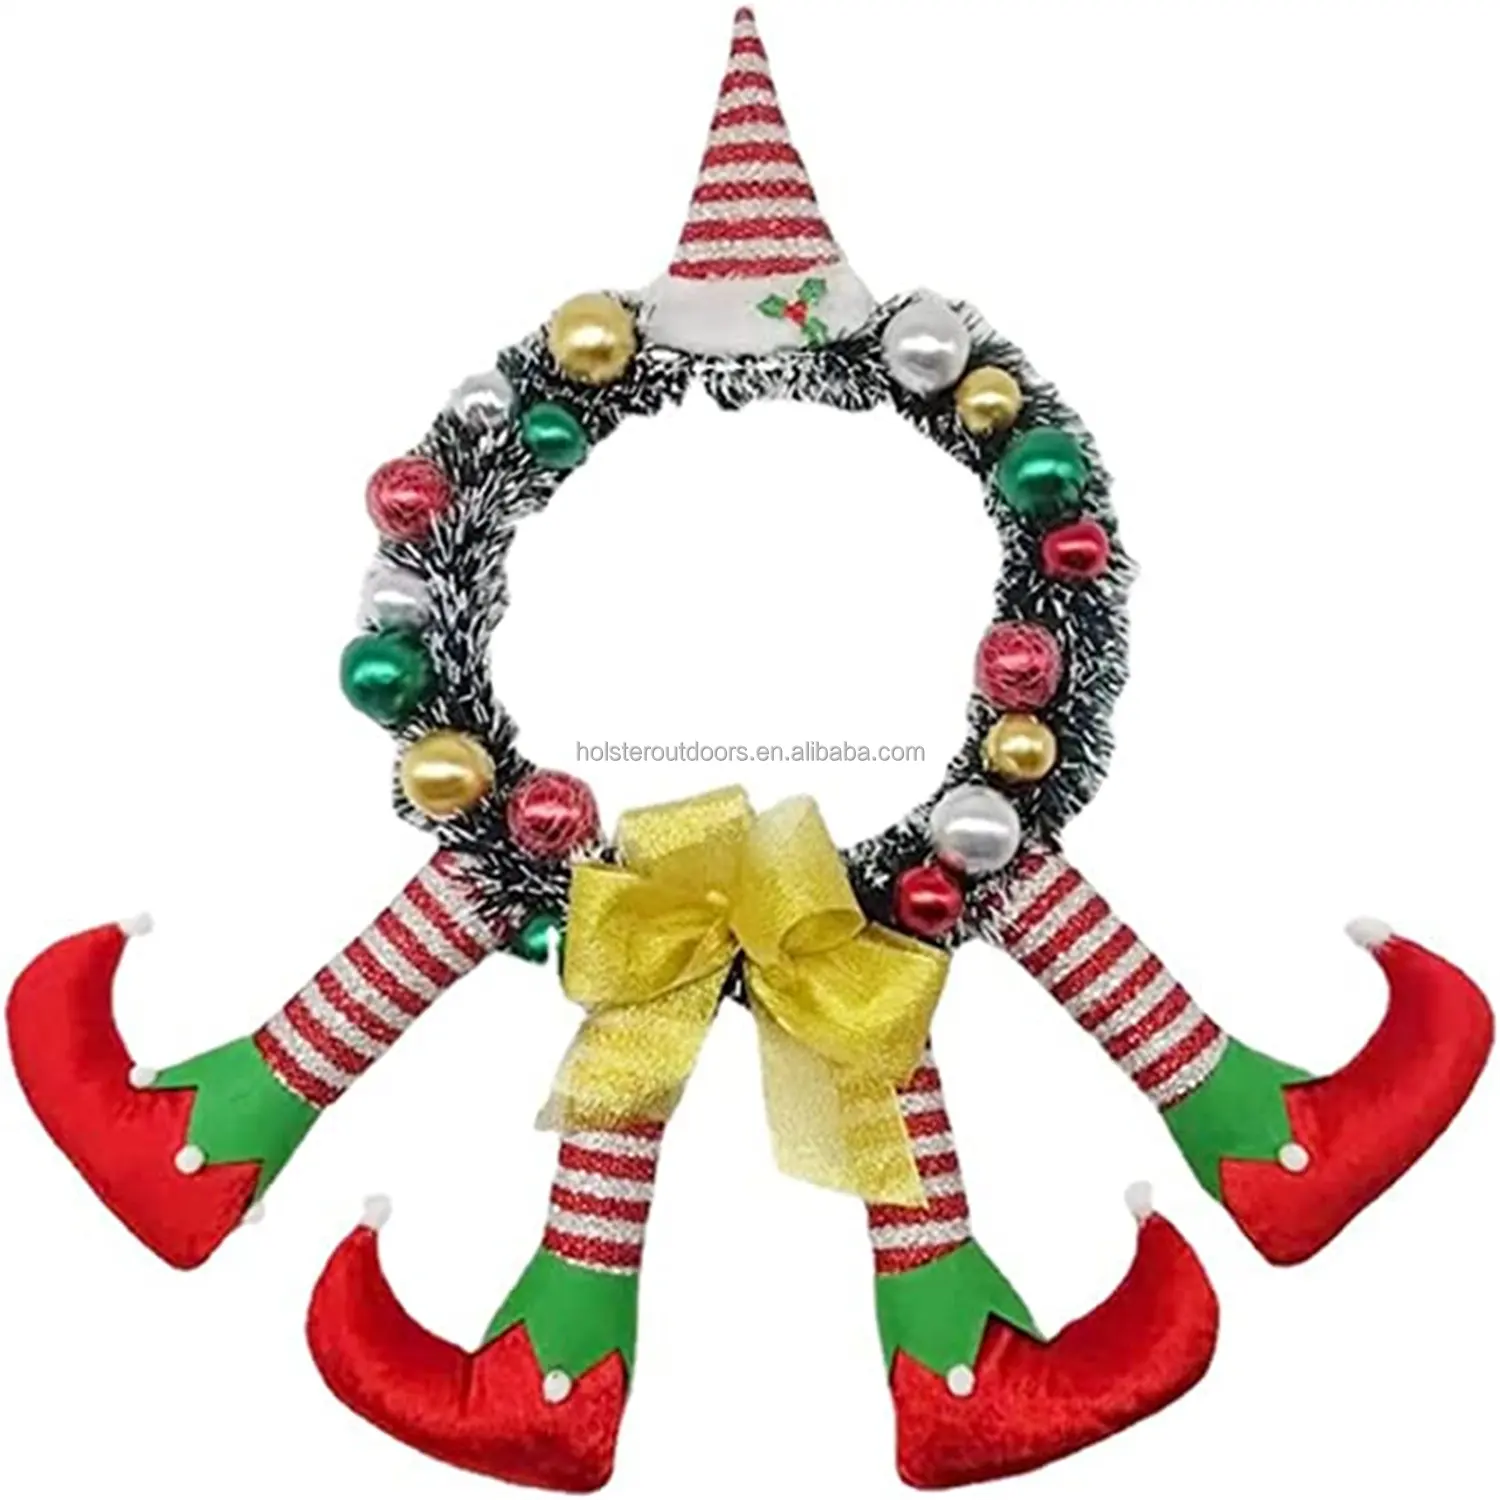 25,6 Zoll Weihnachten gestreifte Clown Elf Beine Kranz mit Hut Weihnachten hängende Girlande Kränze für Haustür Dekor, Party zubehör